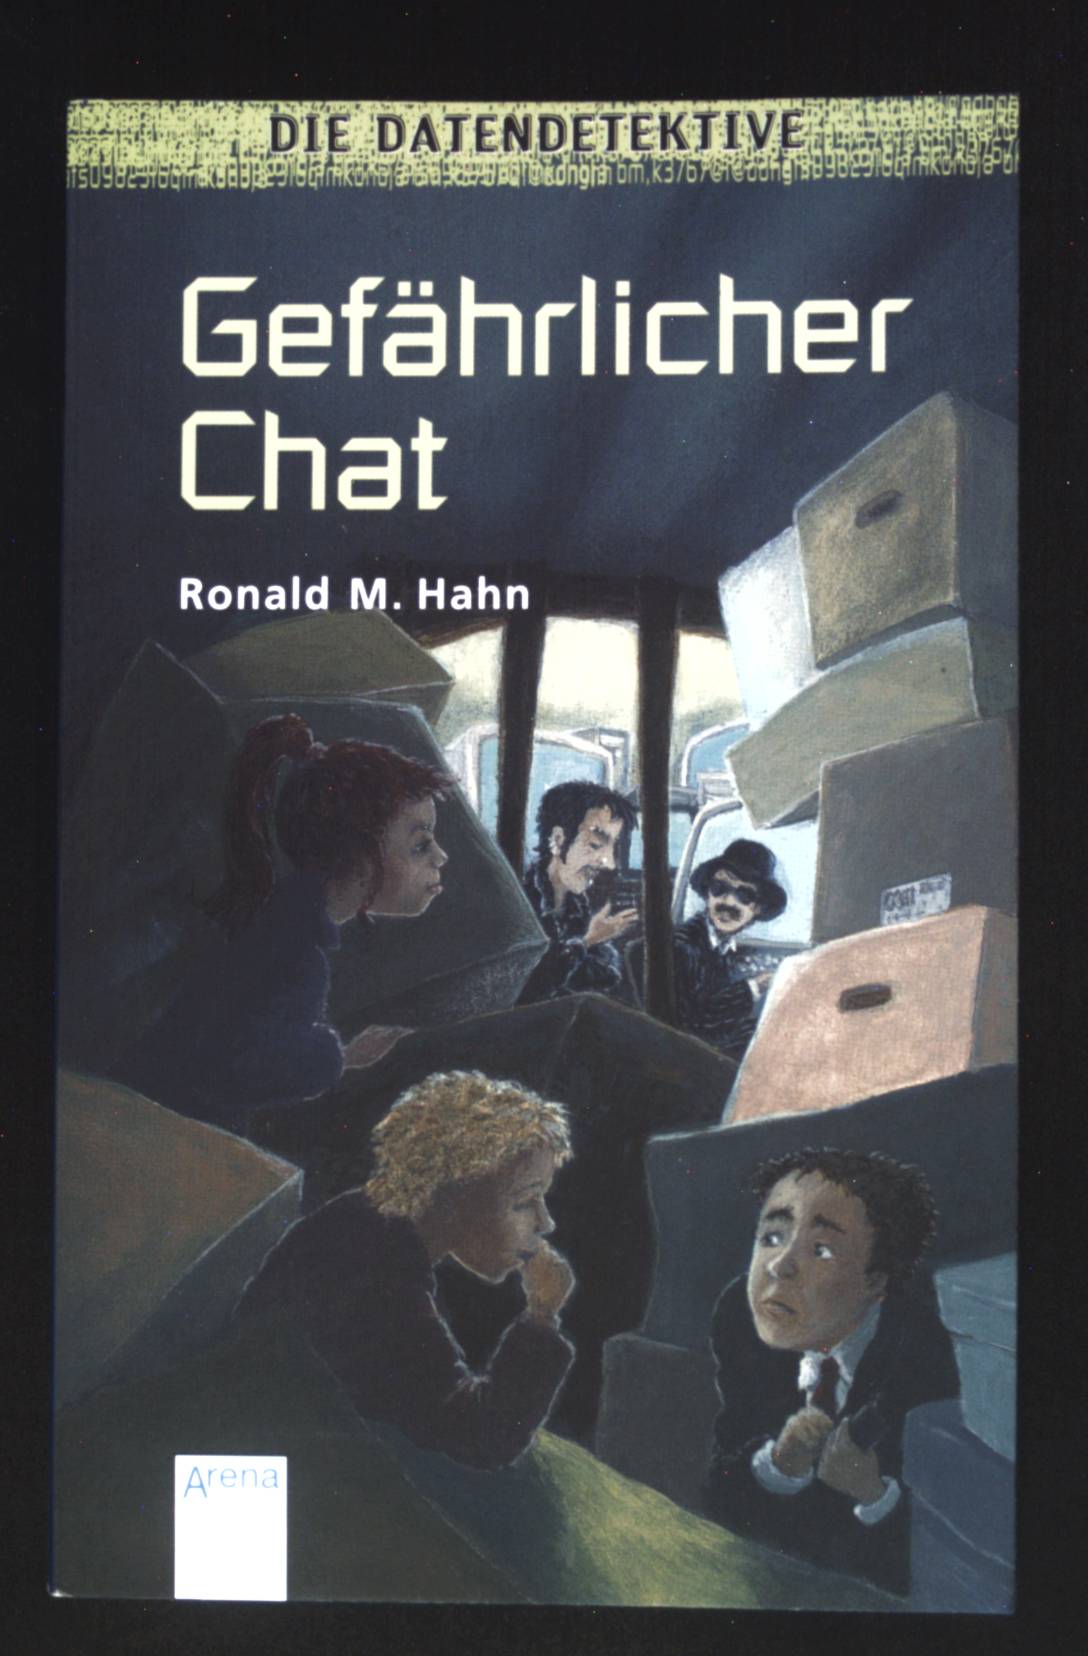 Die Datendetektive; Gefährlicher Chat. Arena-Taschenbuch ; Bd. 2304 - Hahn, Ronald M.